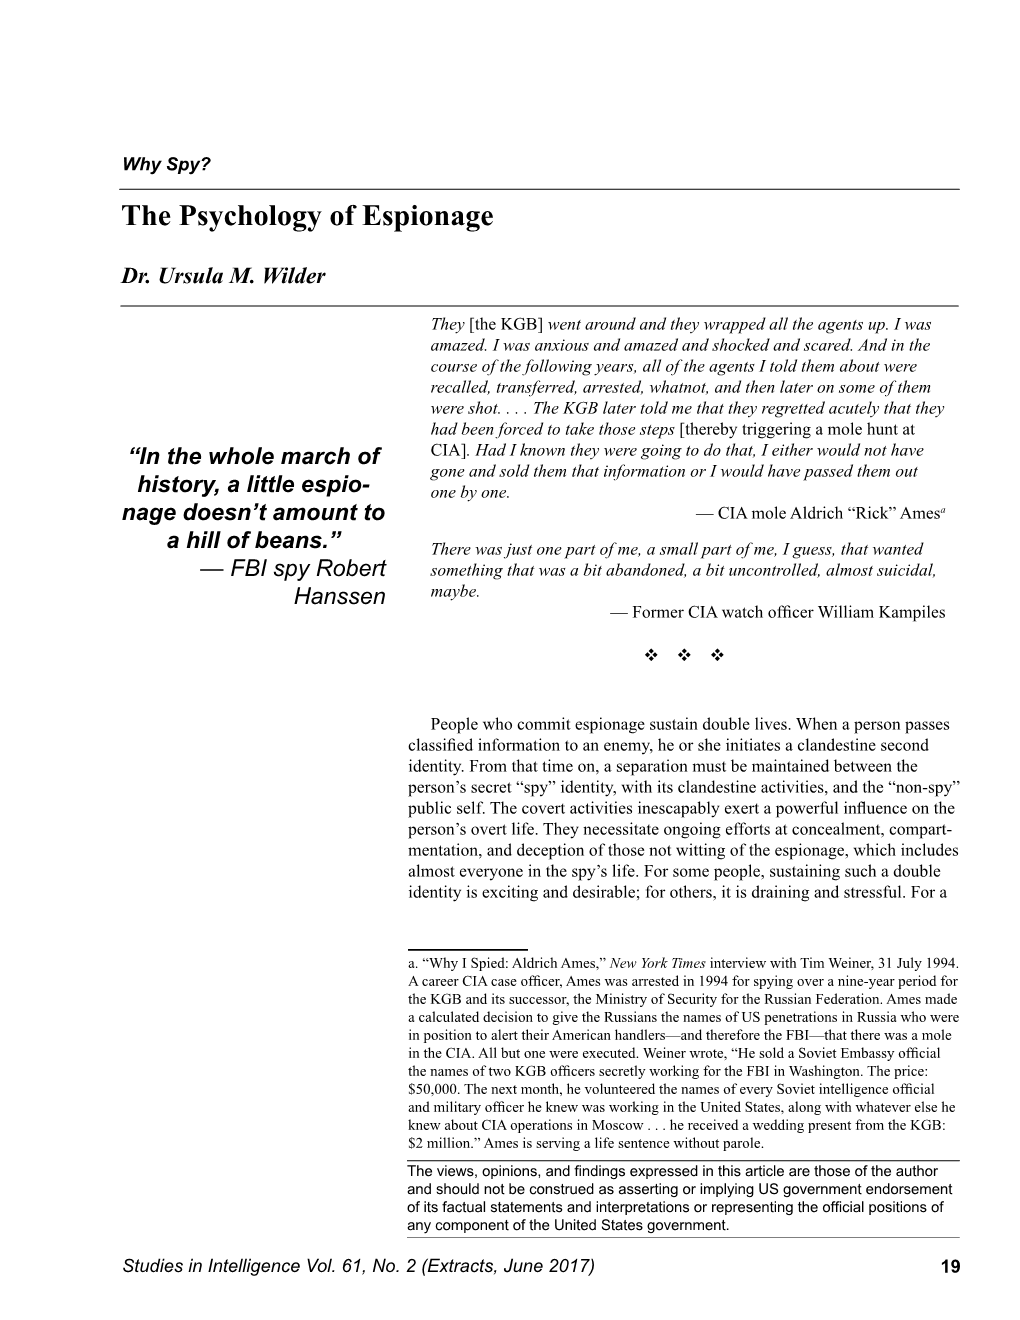 The Psychology of Espionage